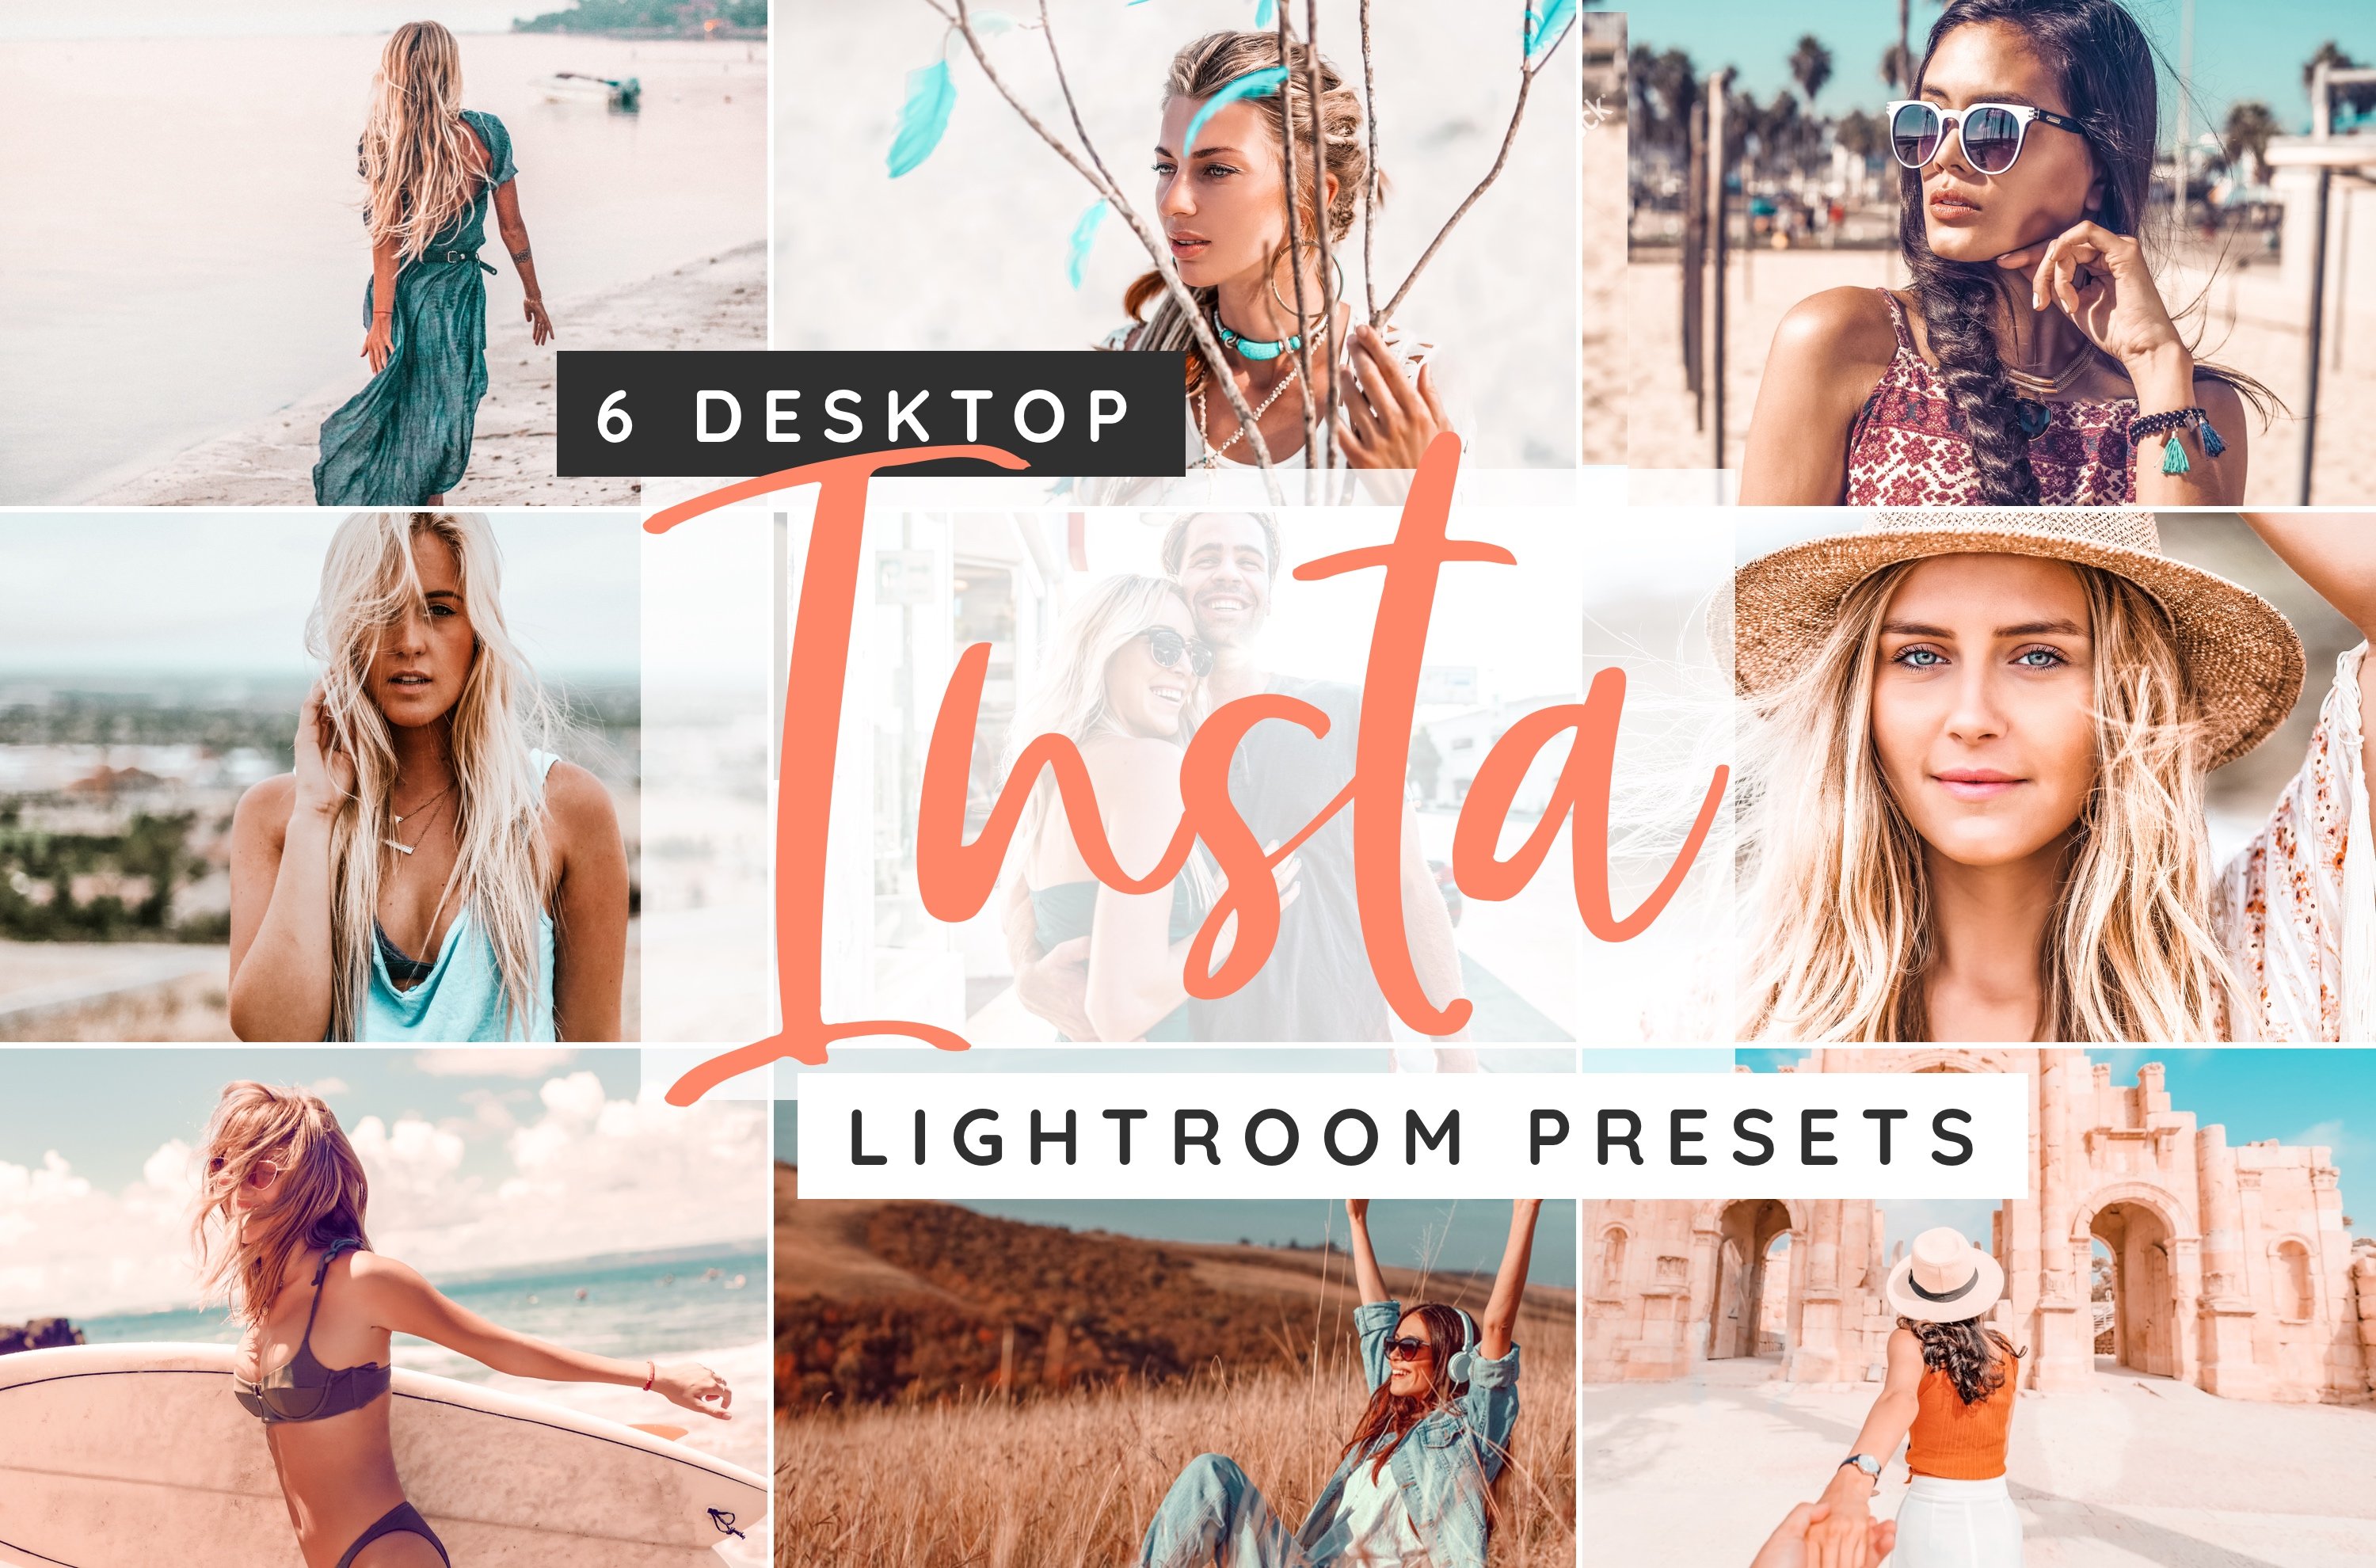 Insta desktop Lightroom presetscover image.